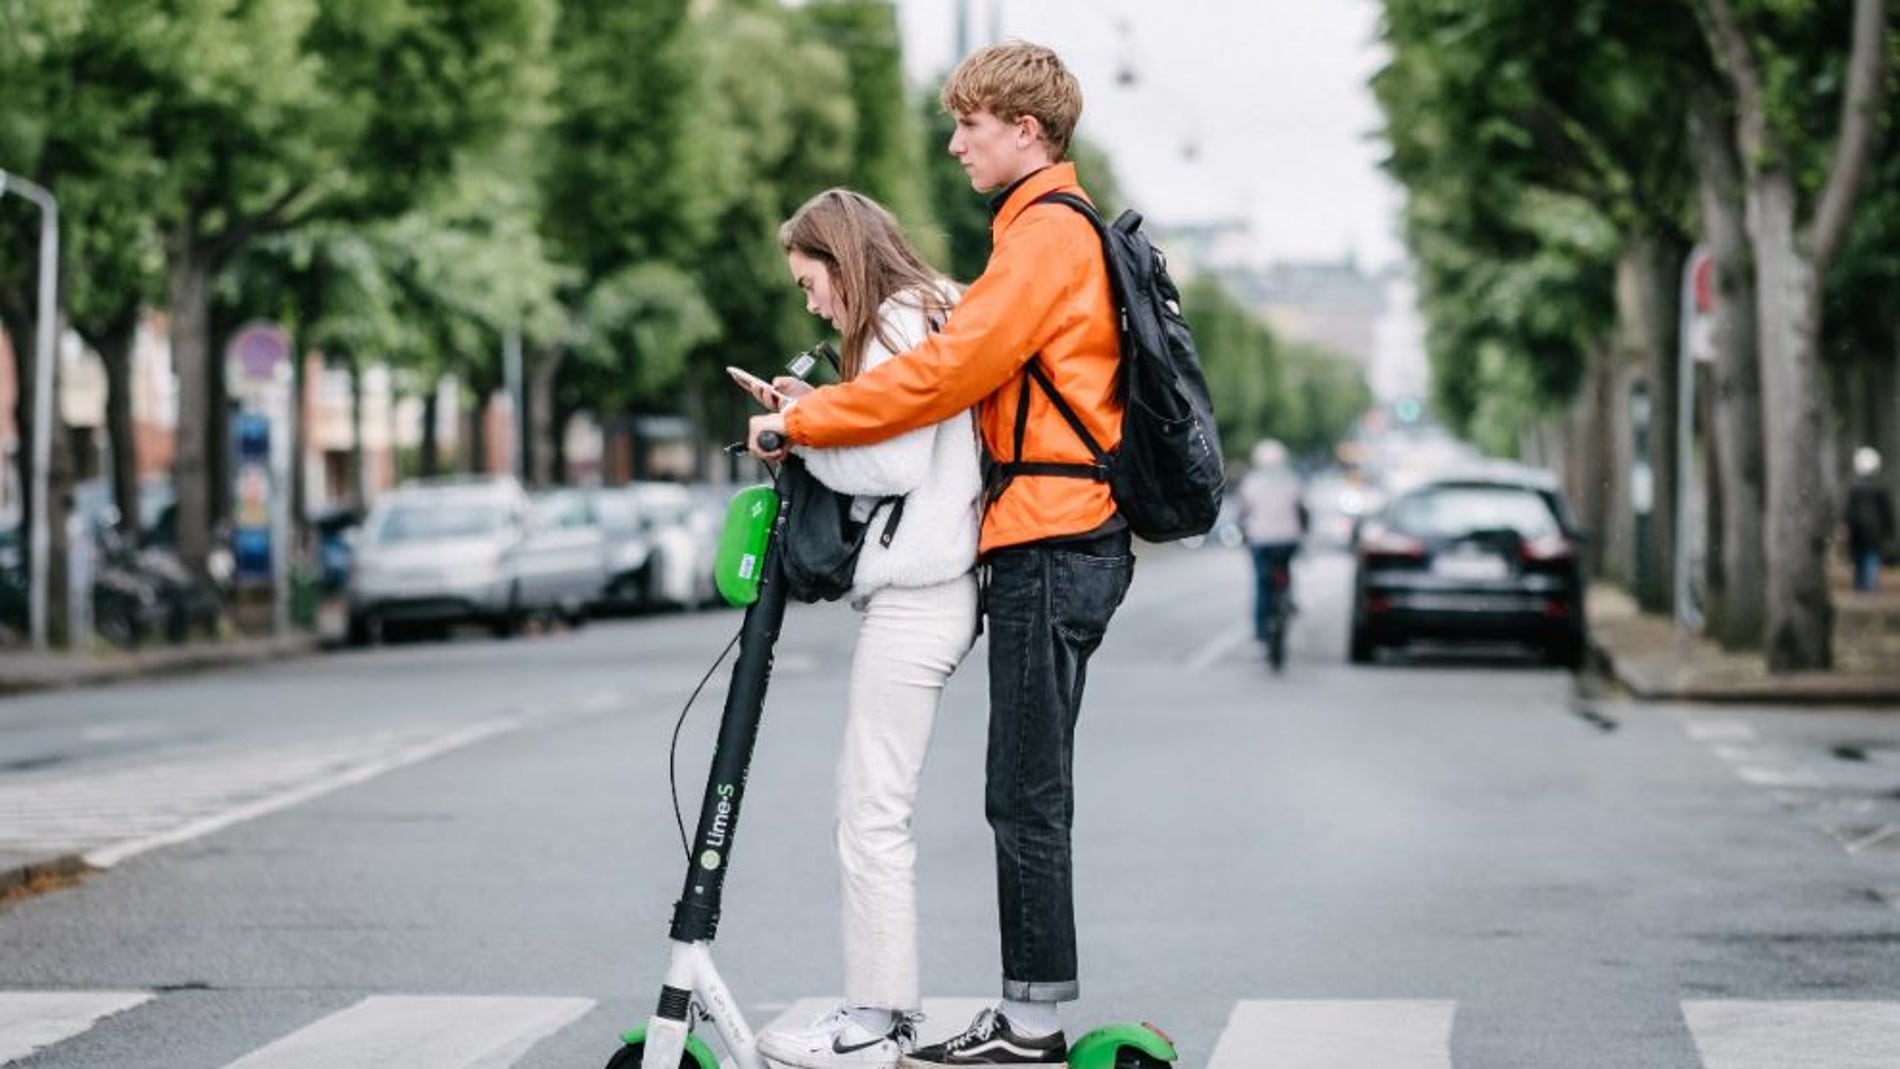 Disenan asfaltos inteligentes para aumentar la seguridad de los patinetes electricos